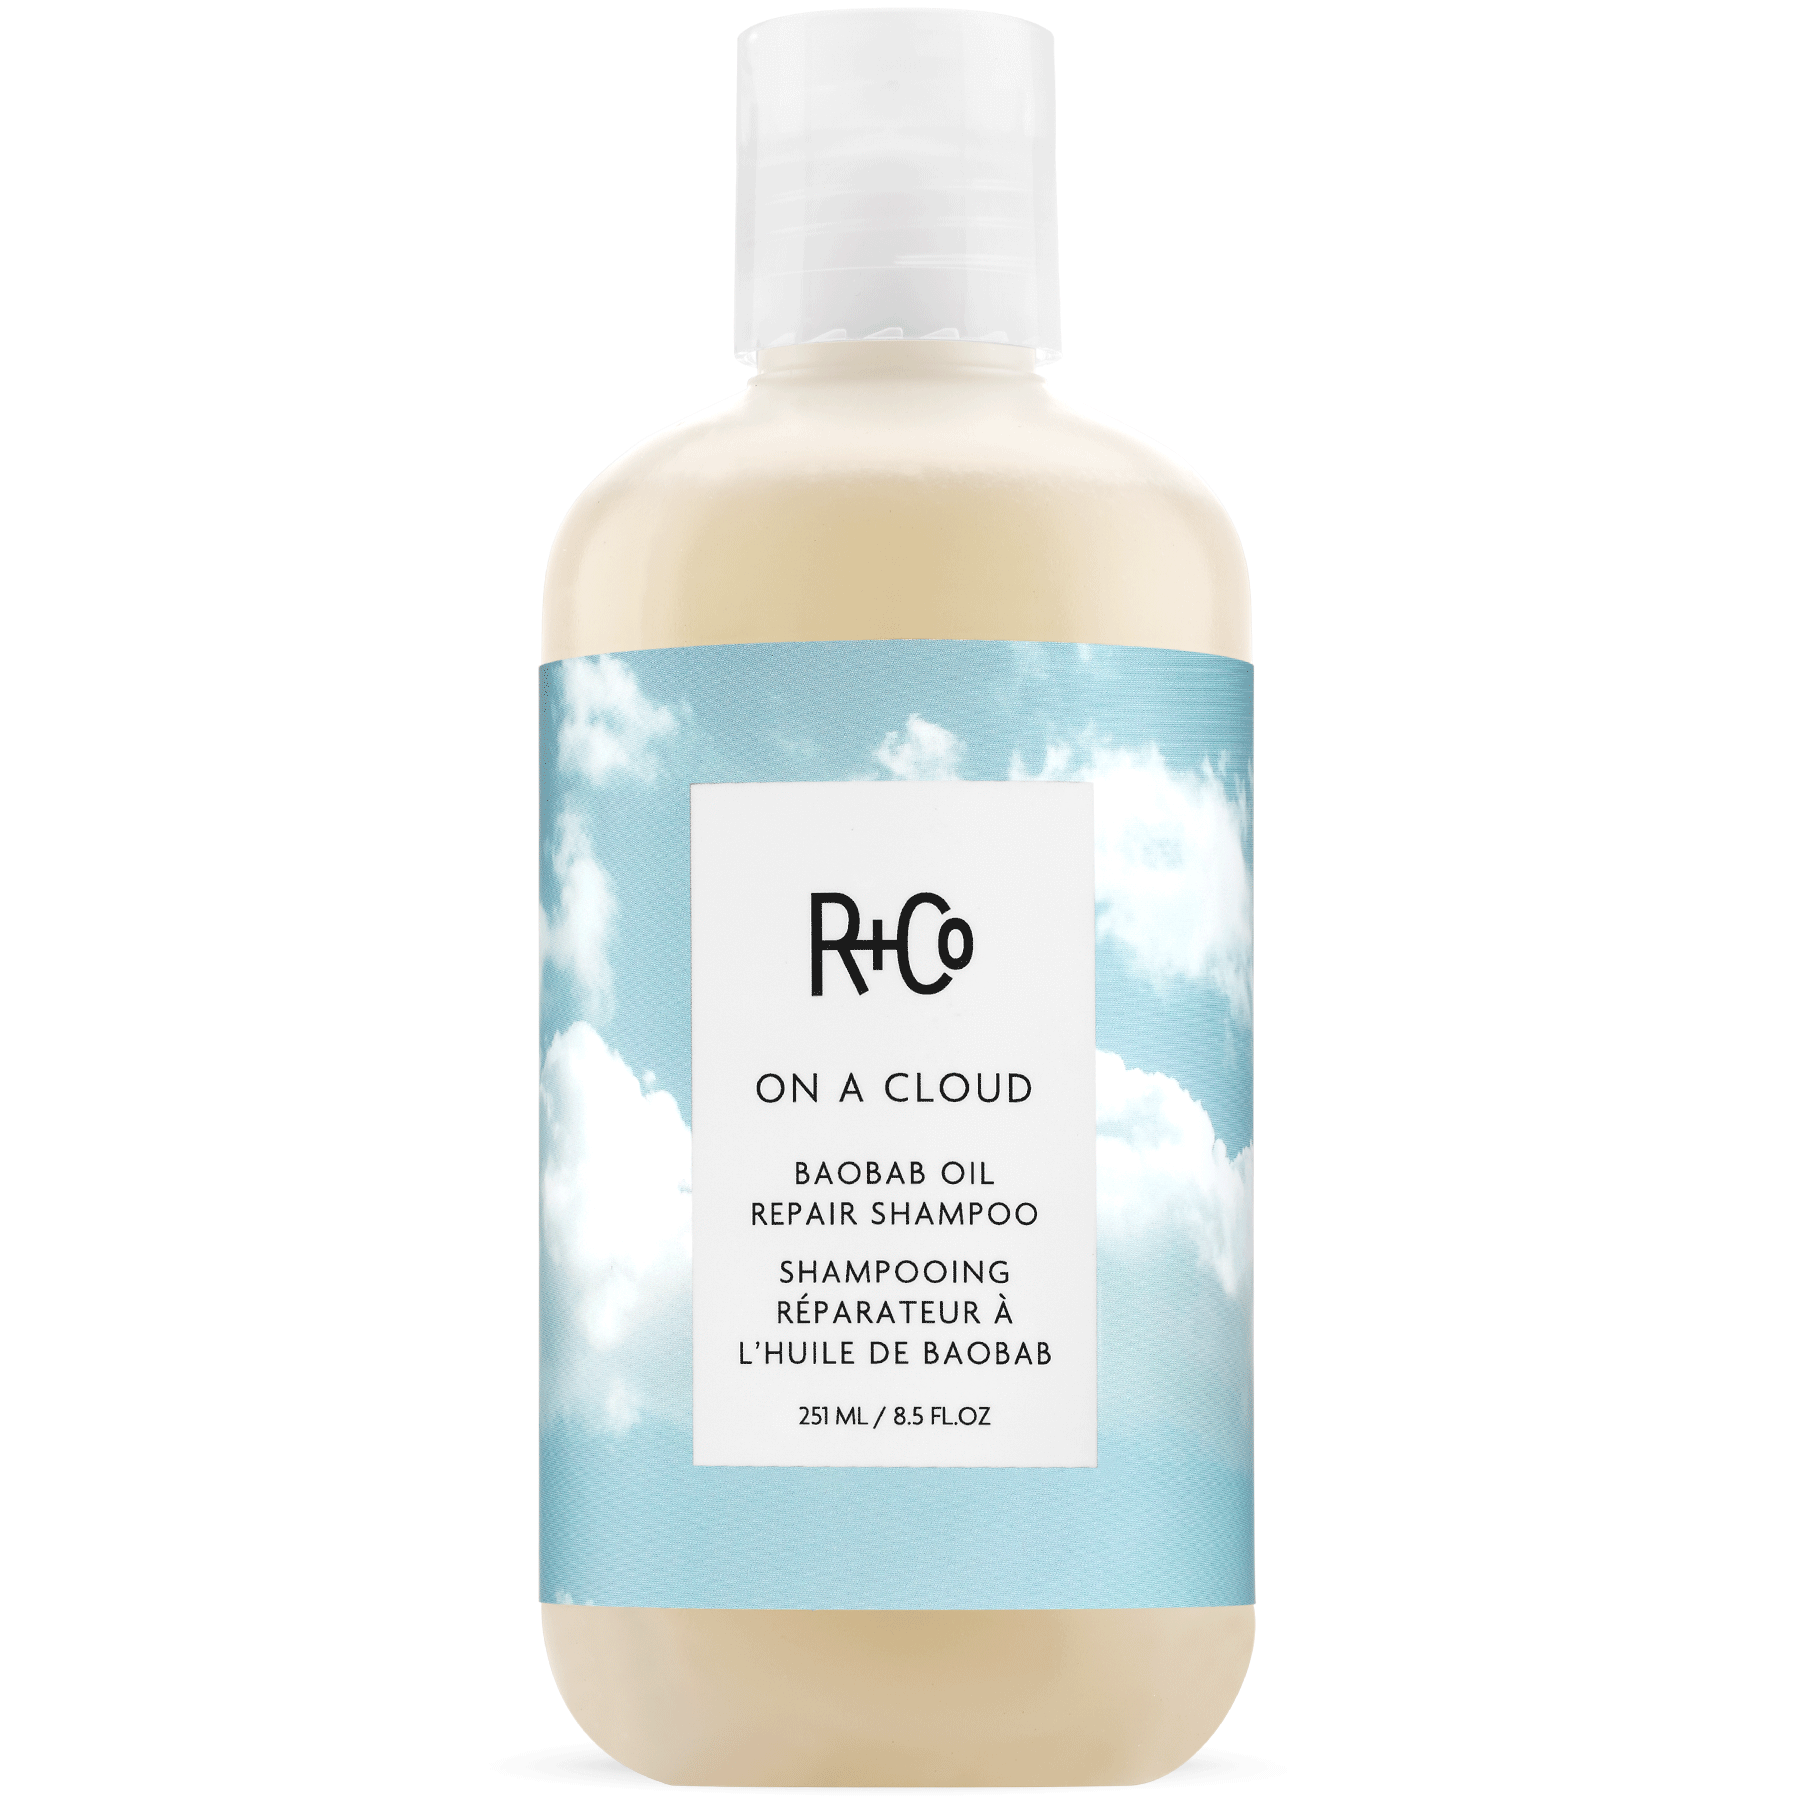 R+CO On A Cloud Baobab Oil Repair Shampoo (251 ml)